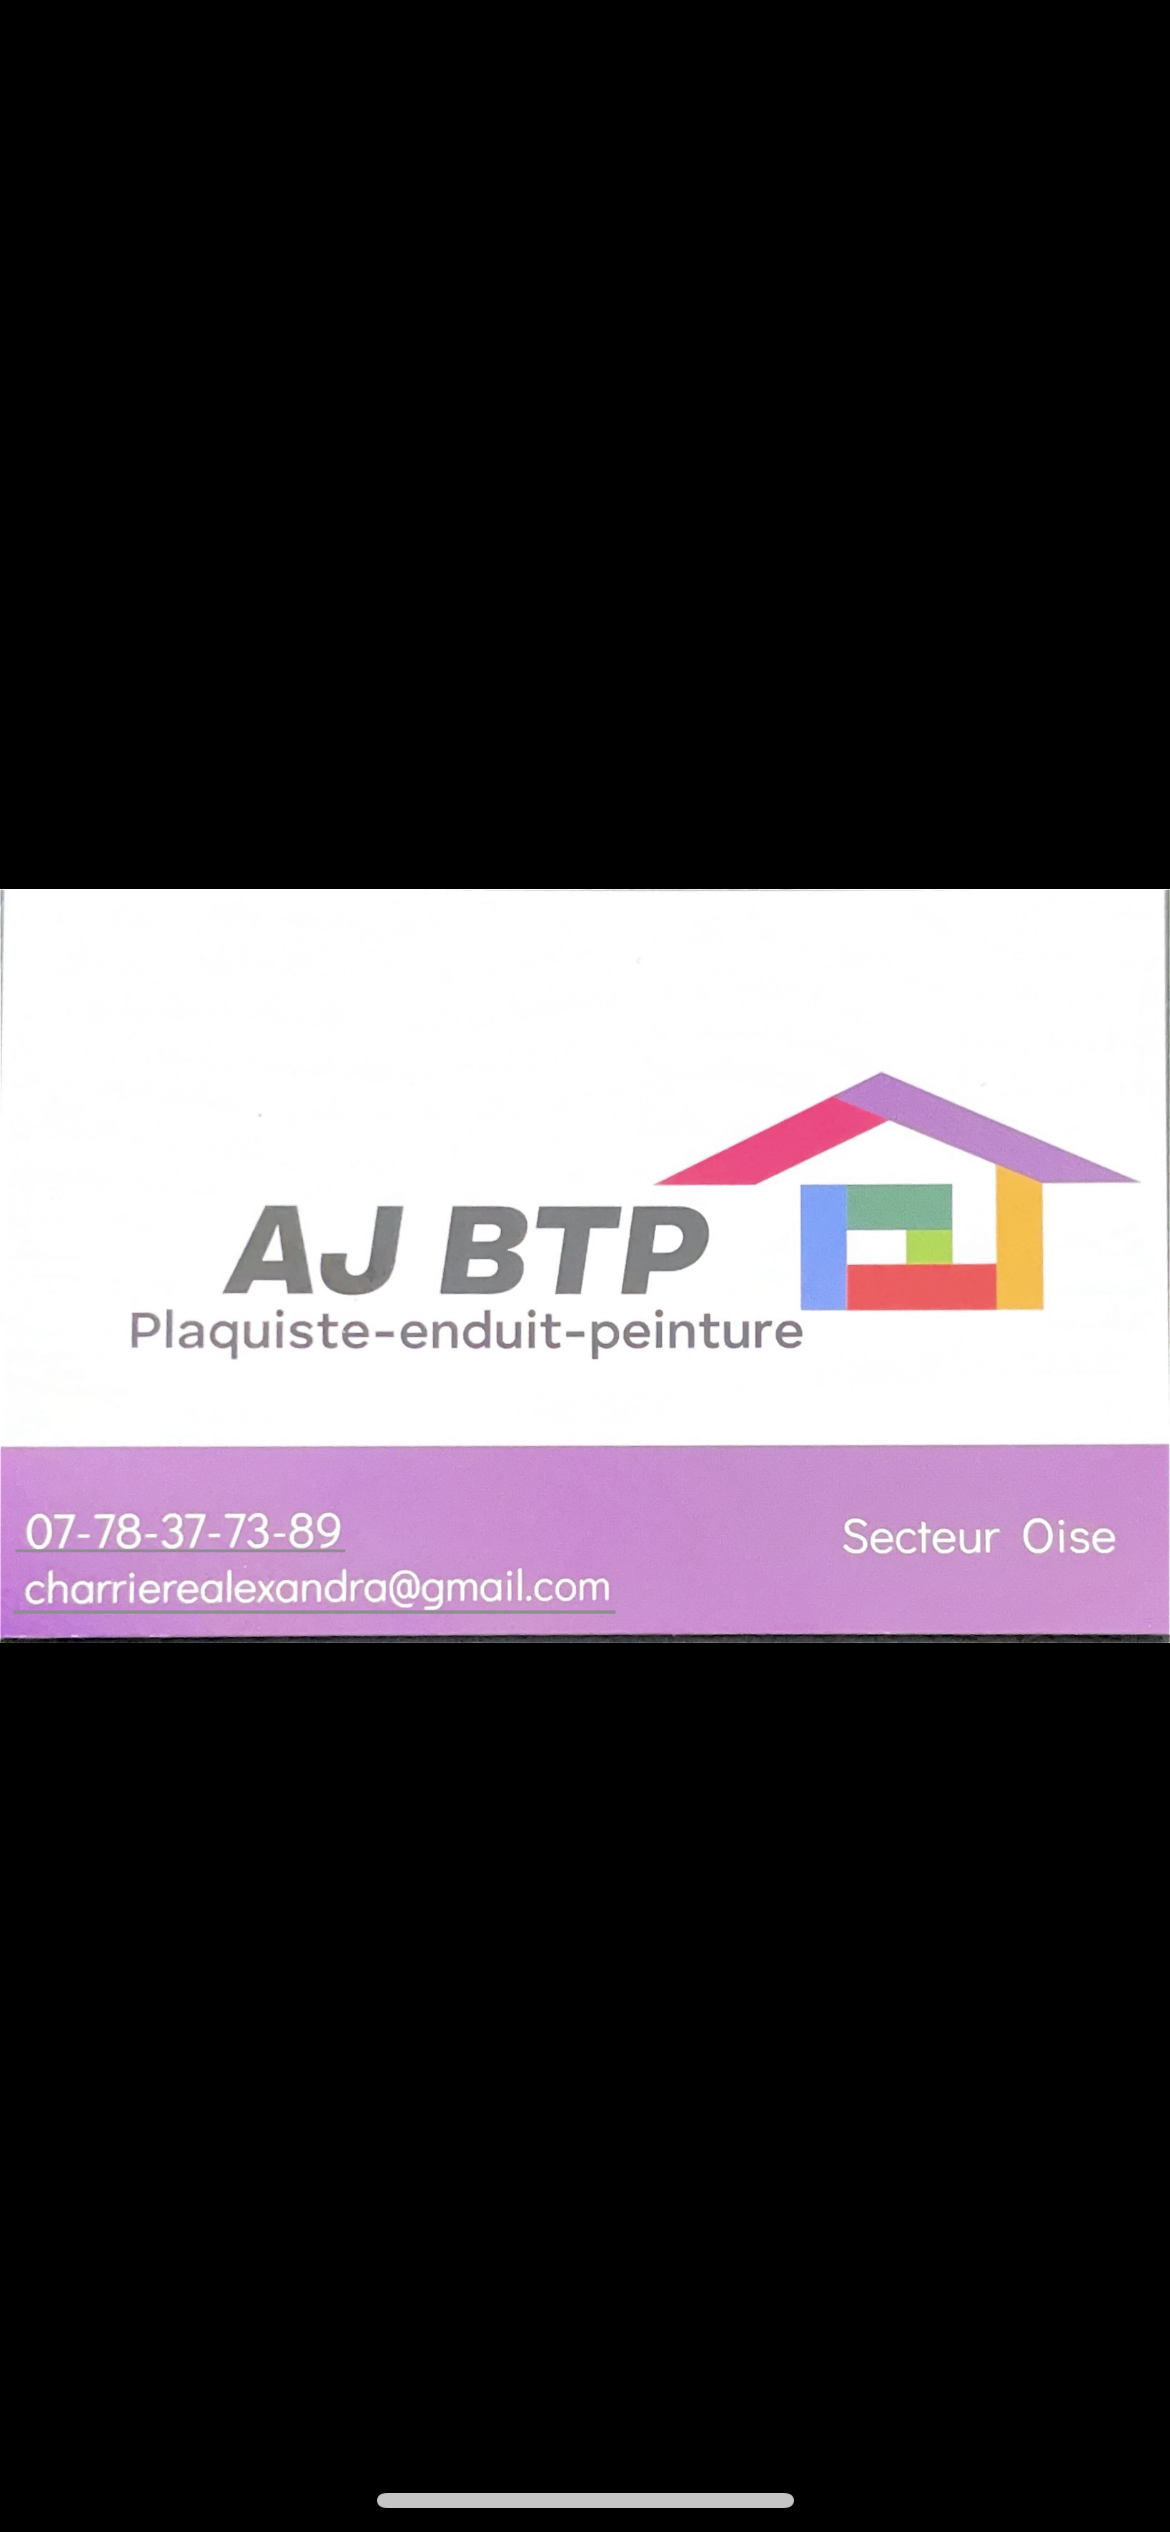 Logo de AJ BTP, société de travaux en Fourniture et pose de carrelage